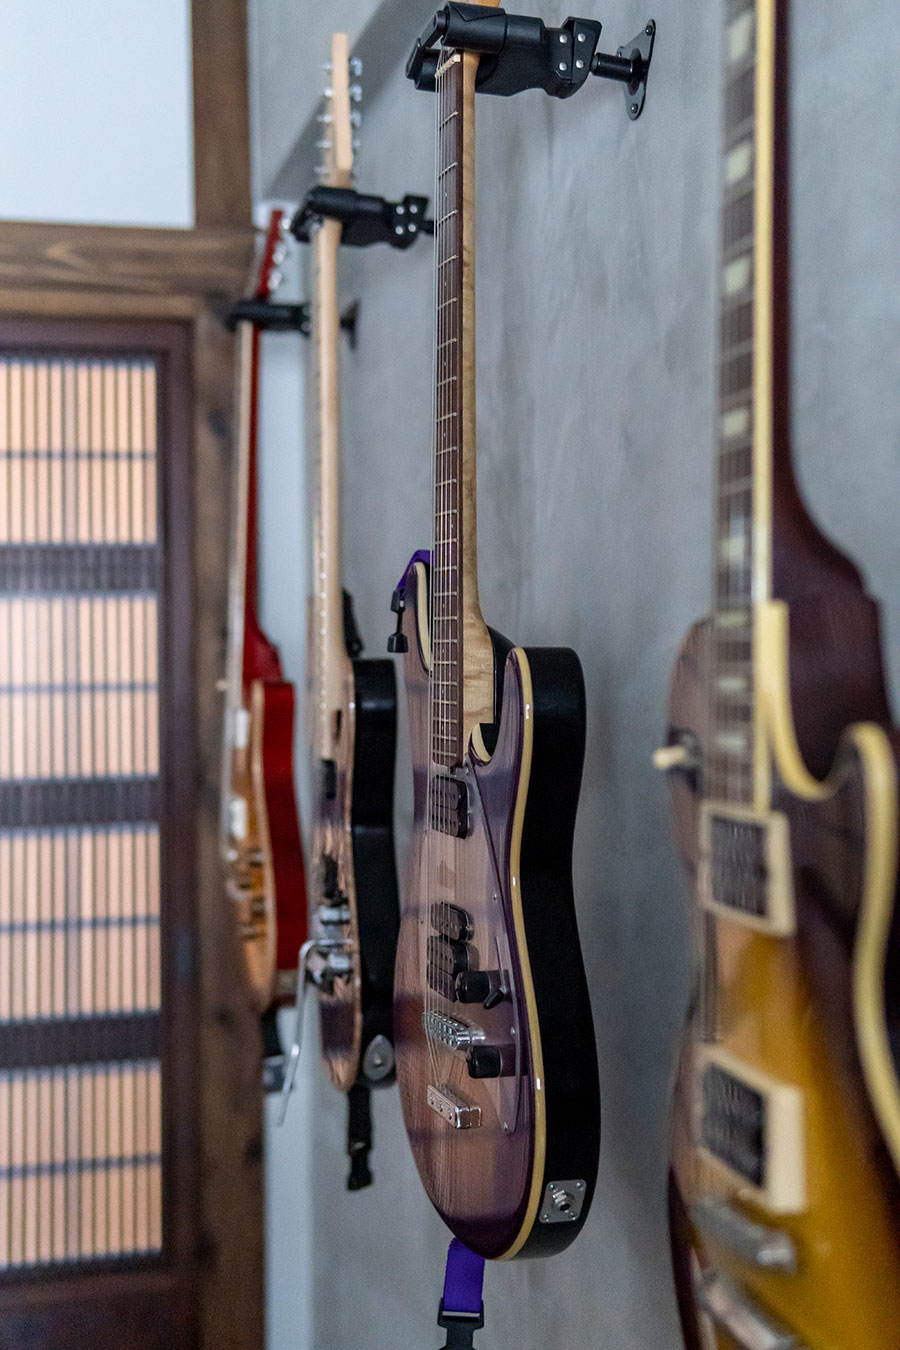 壁には鉄平さんの趣味であるギターを飾って。